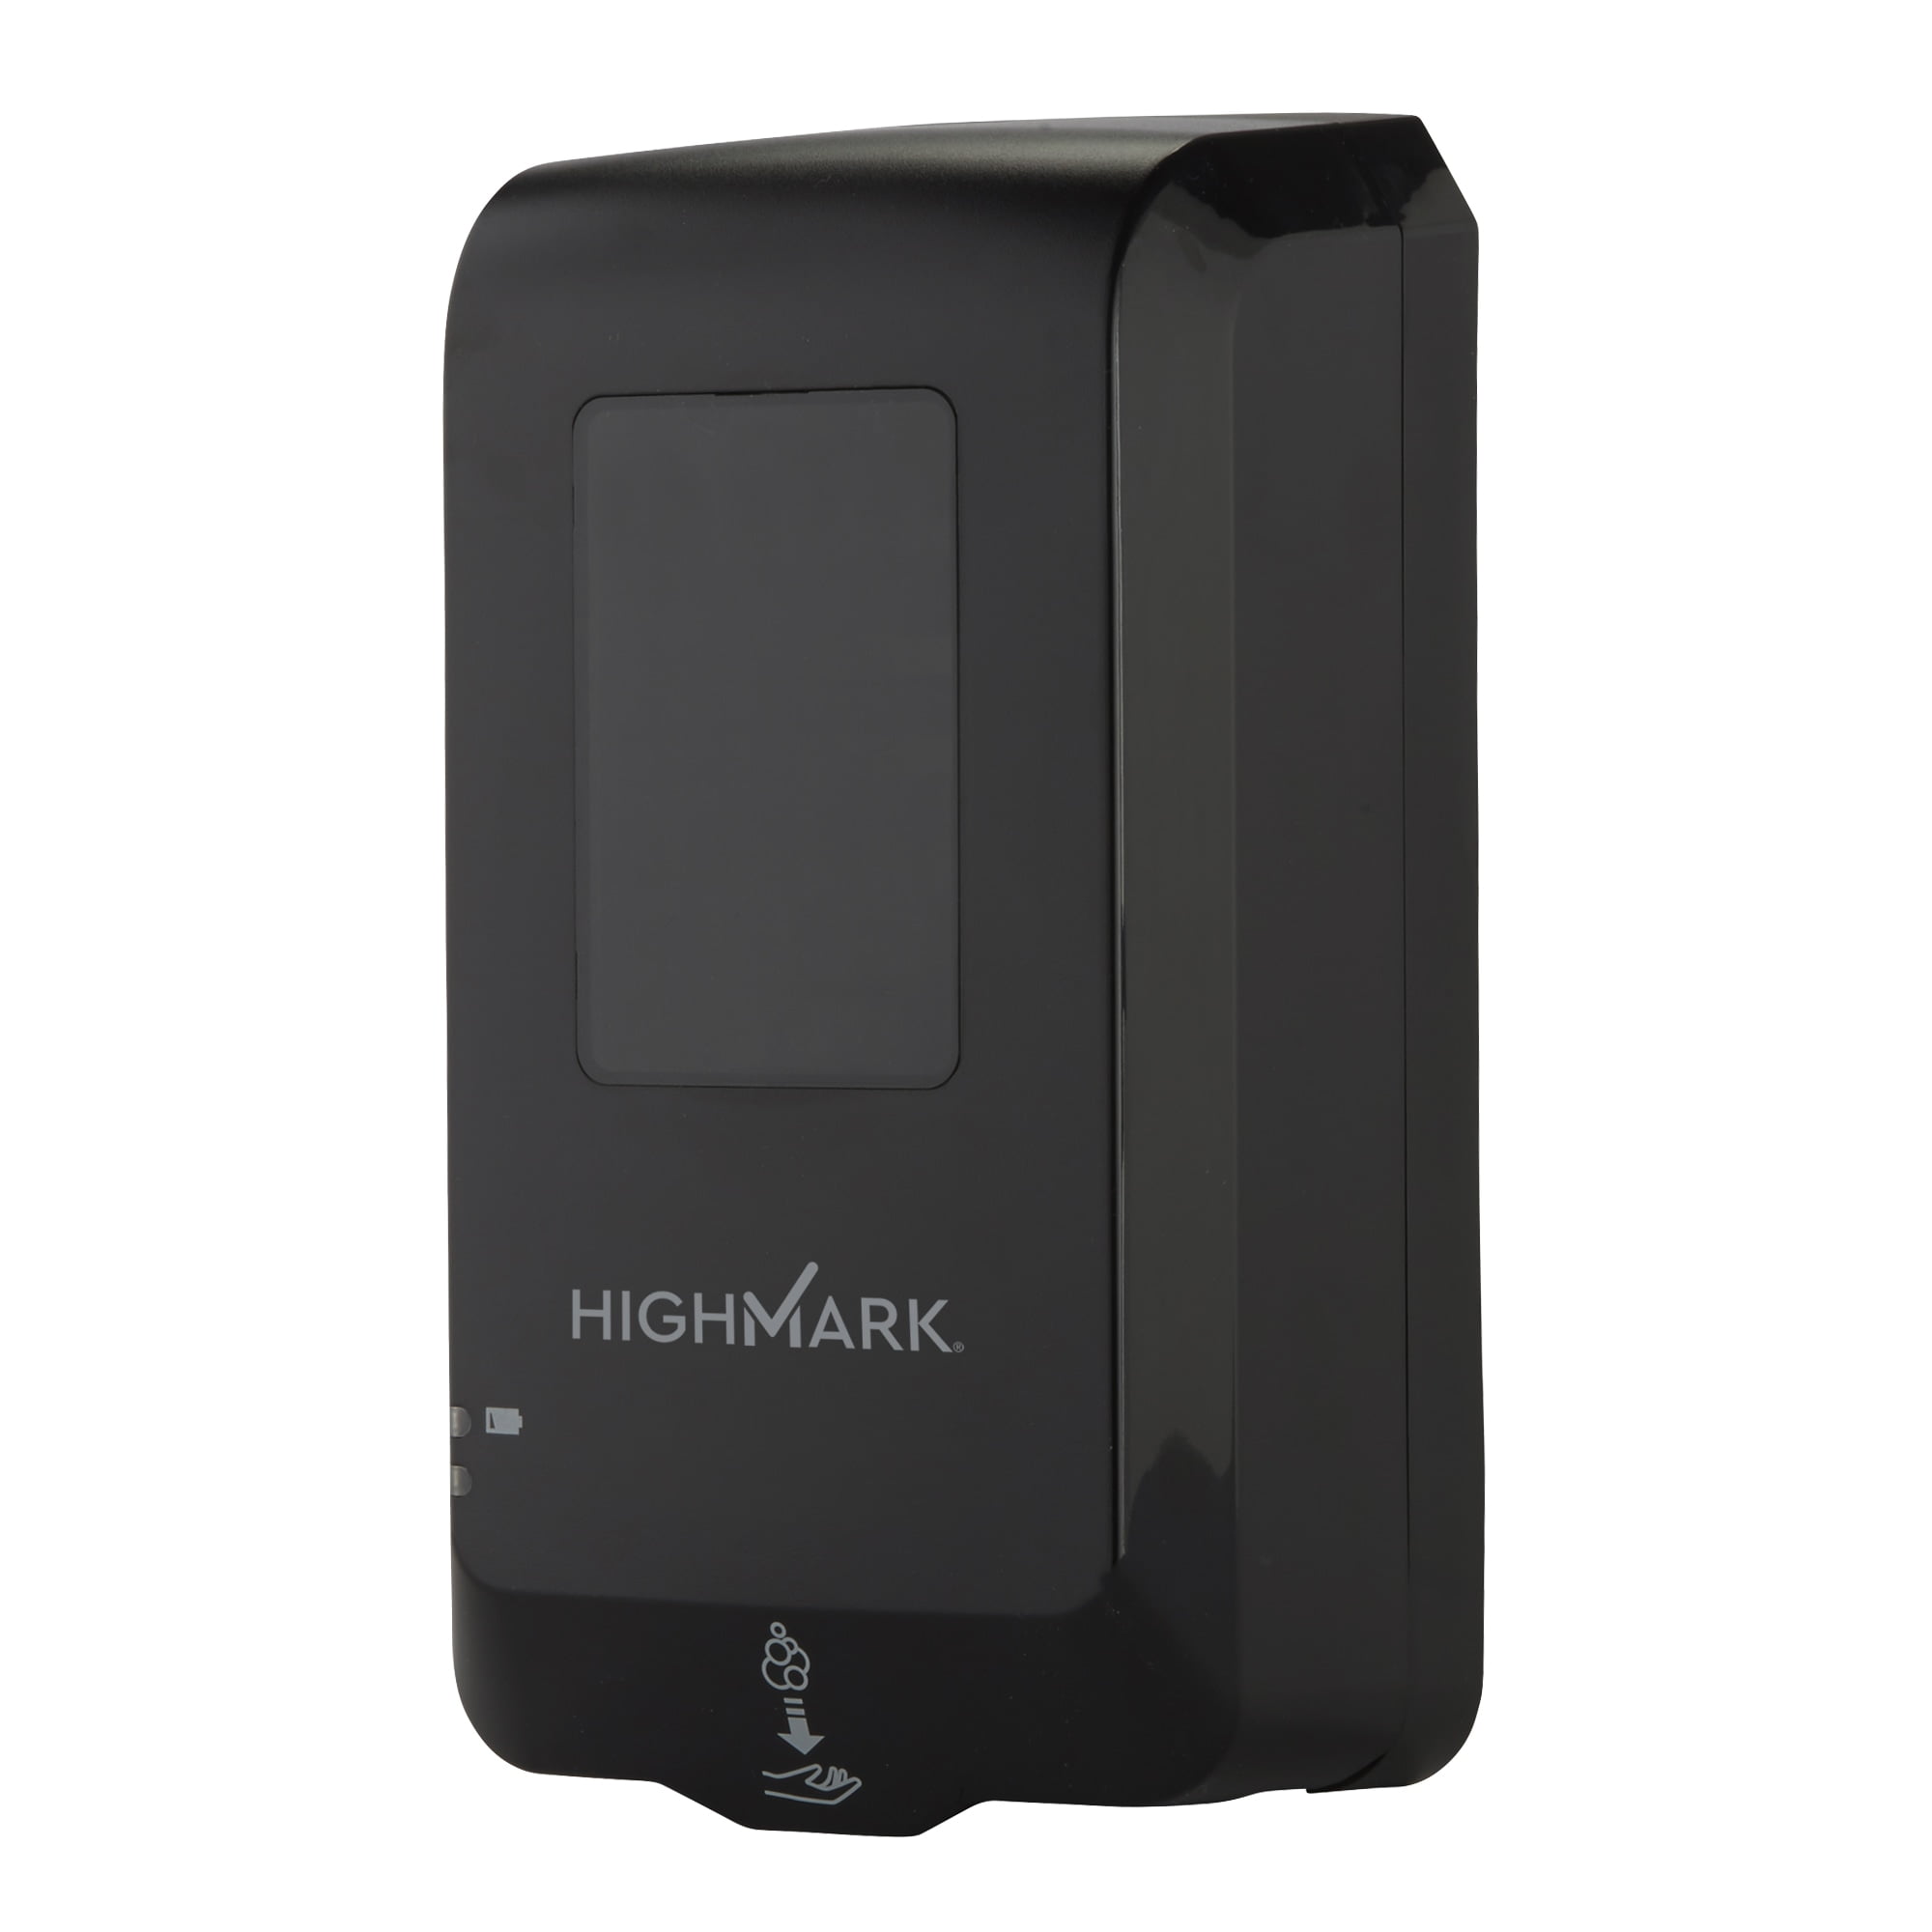 Highmark smart 3310 el cuerpo humano tiene huesos